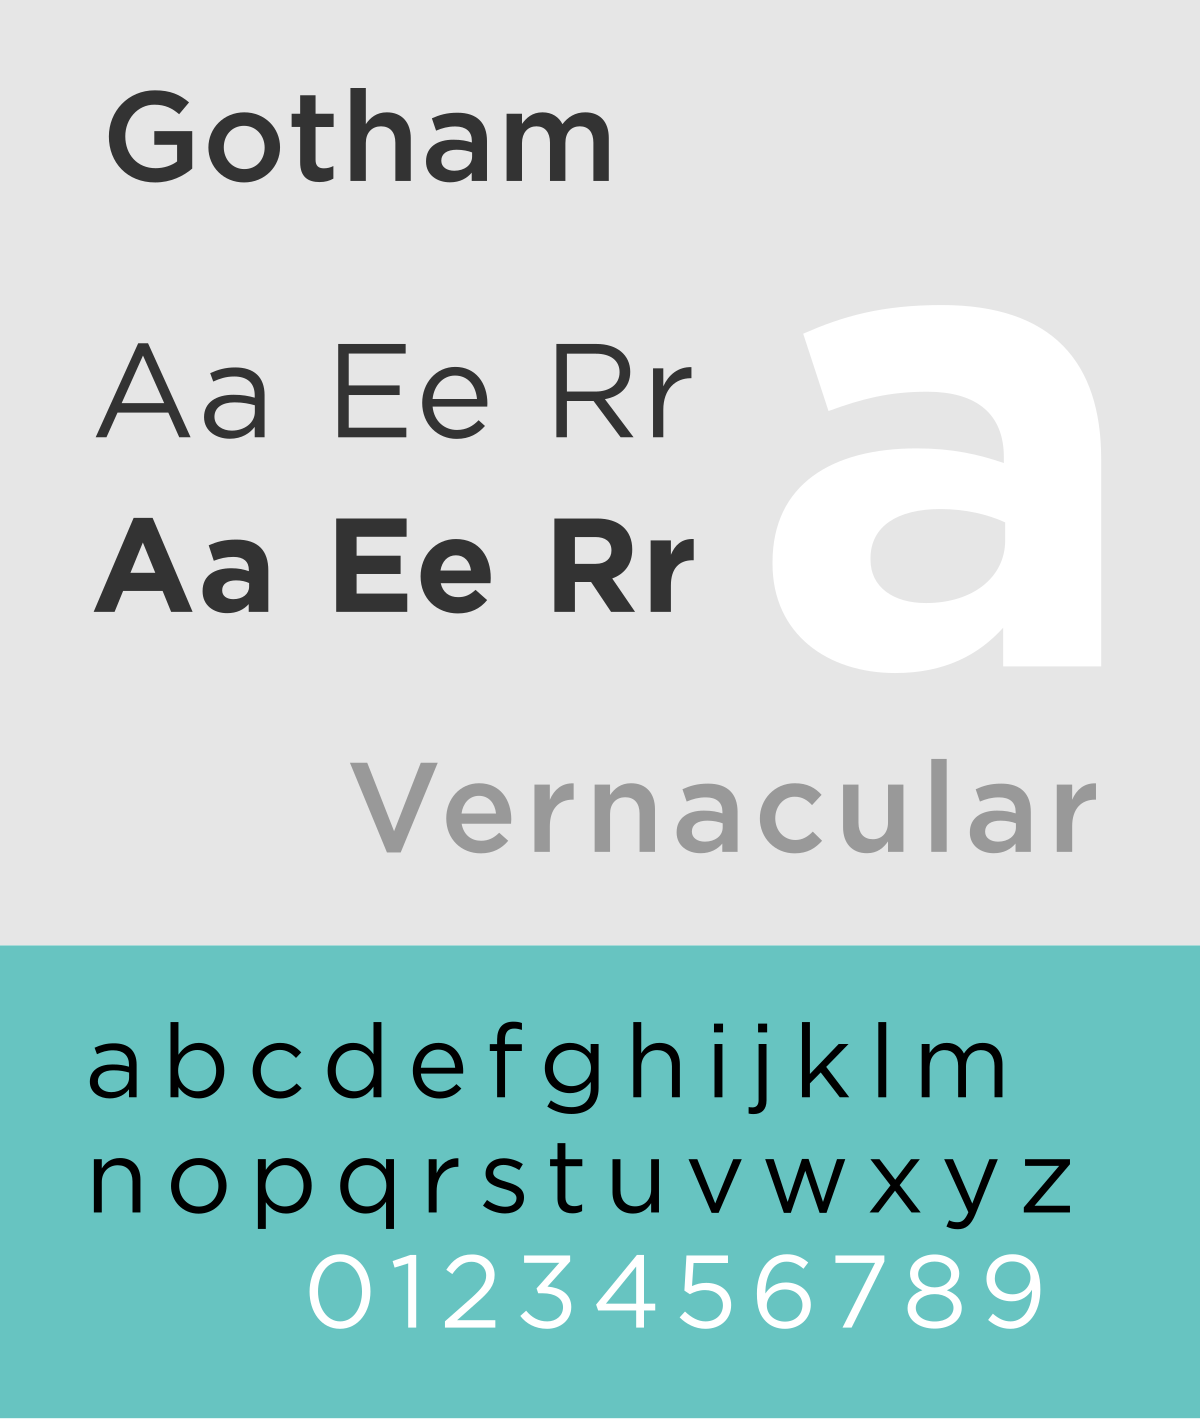 Gotham Typeface Wikipedia